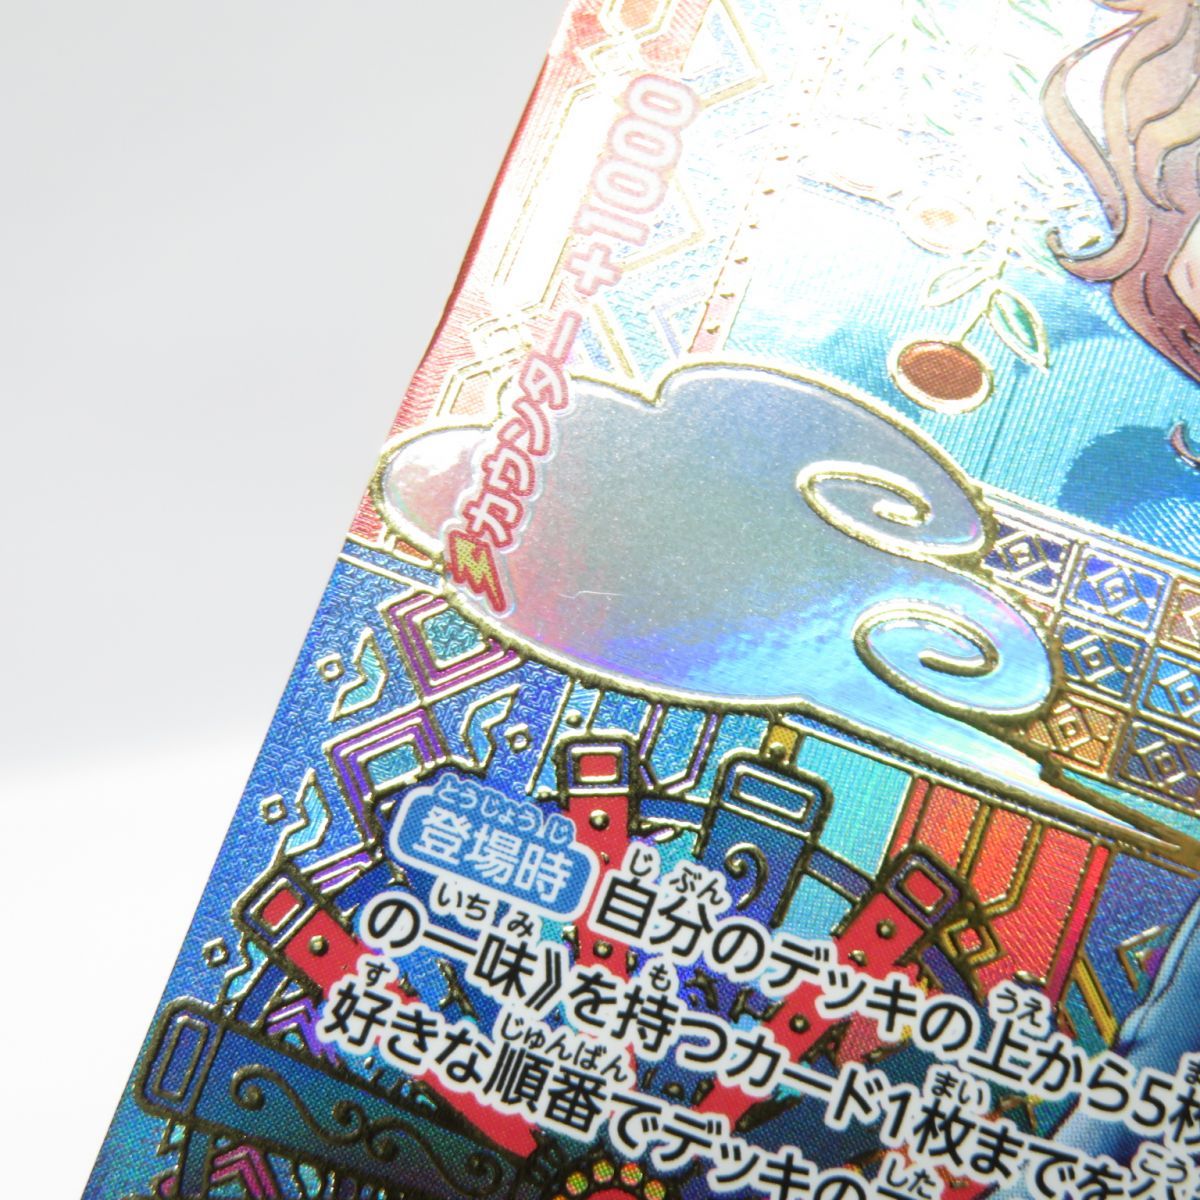 ワンピースカードゲーム ナミ SP OP01-016 R パラレル ※中古 - お宝